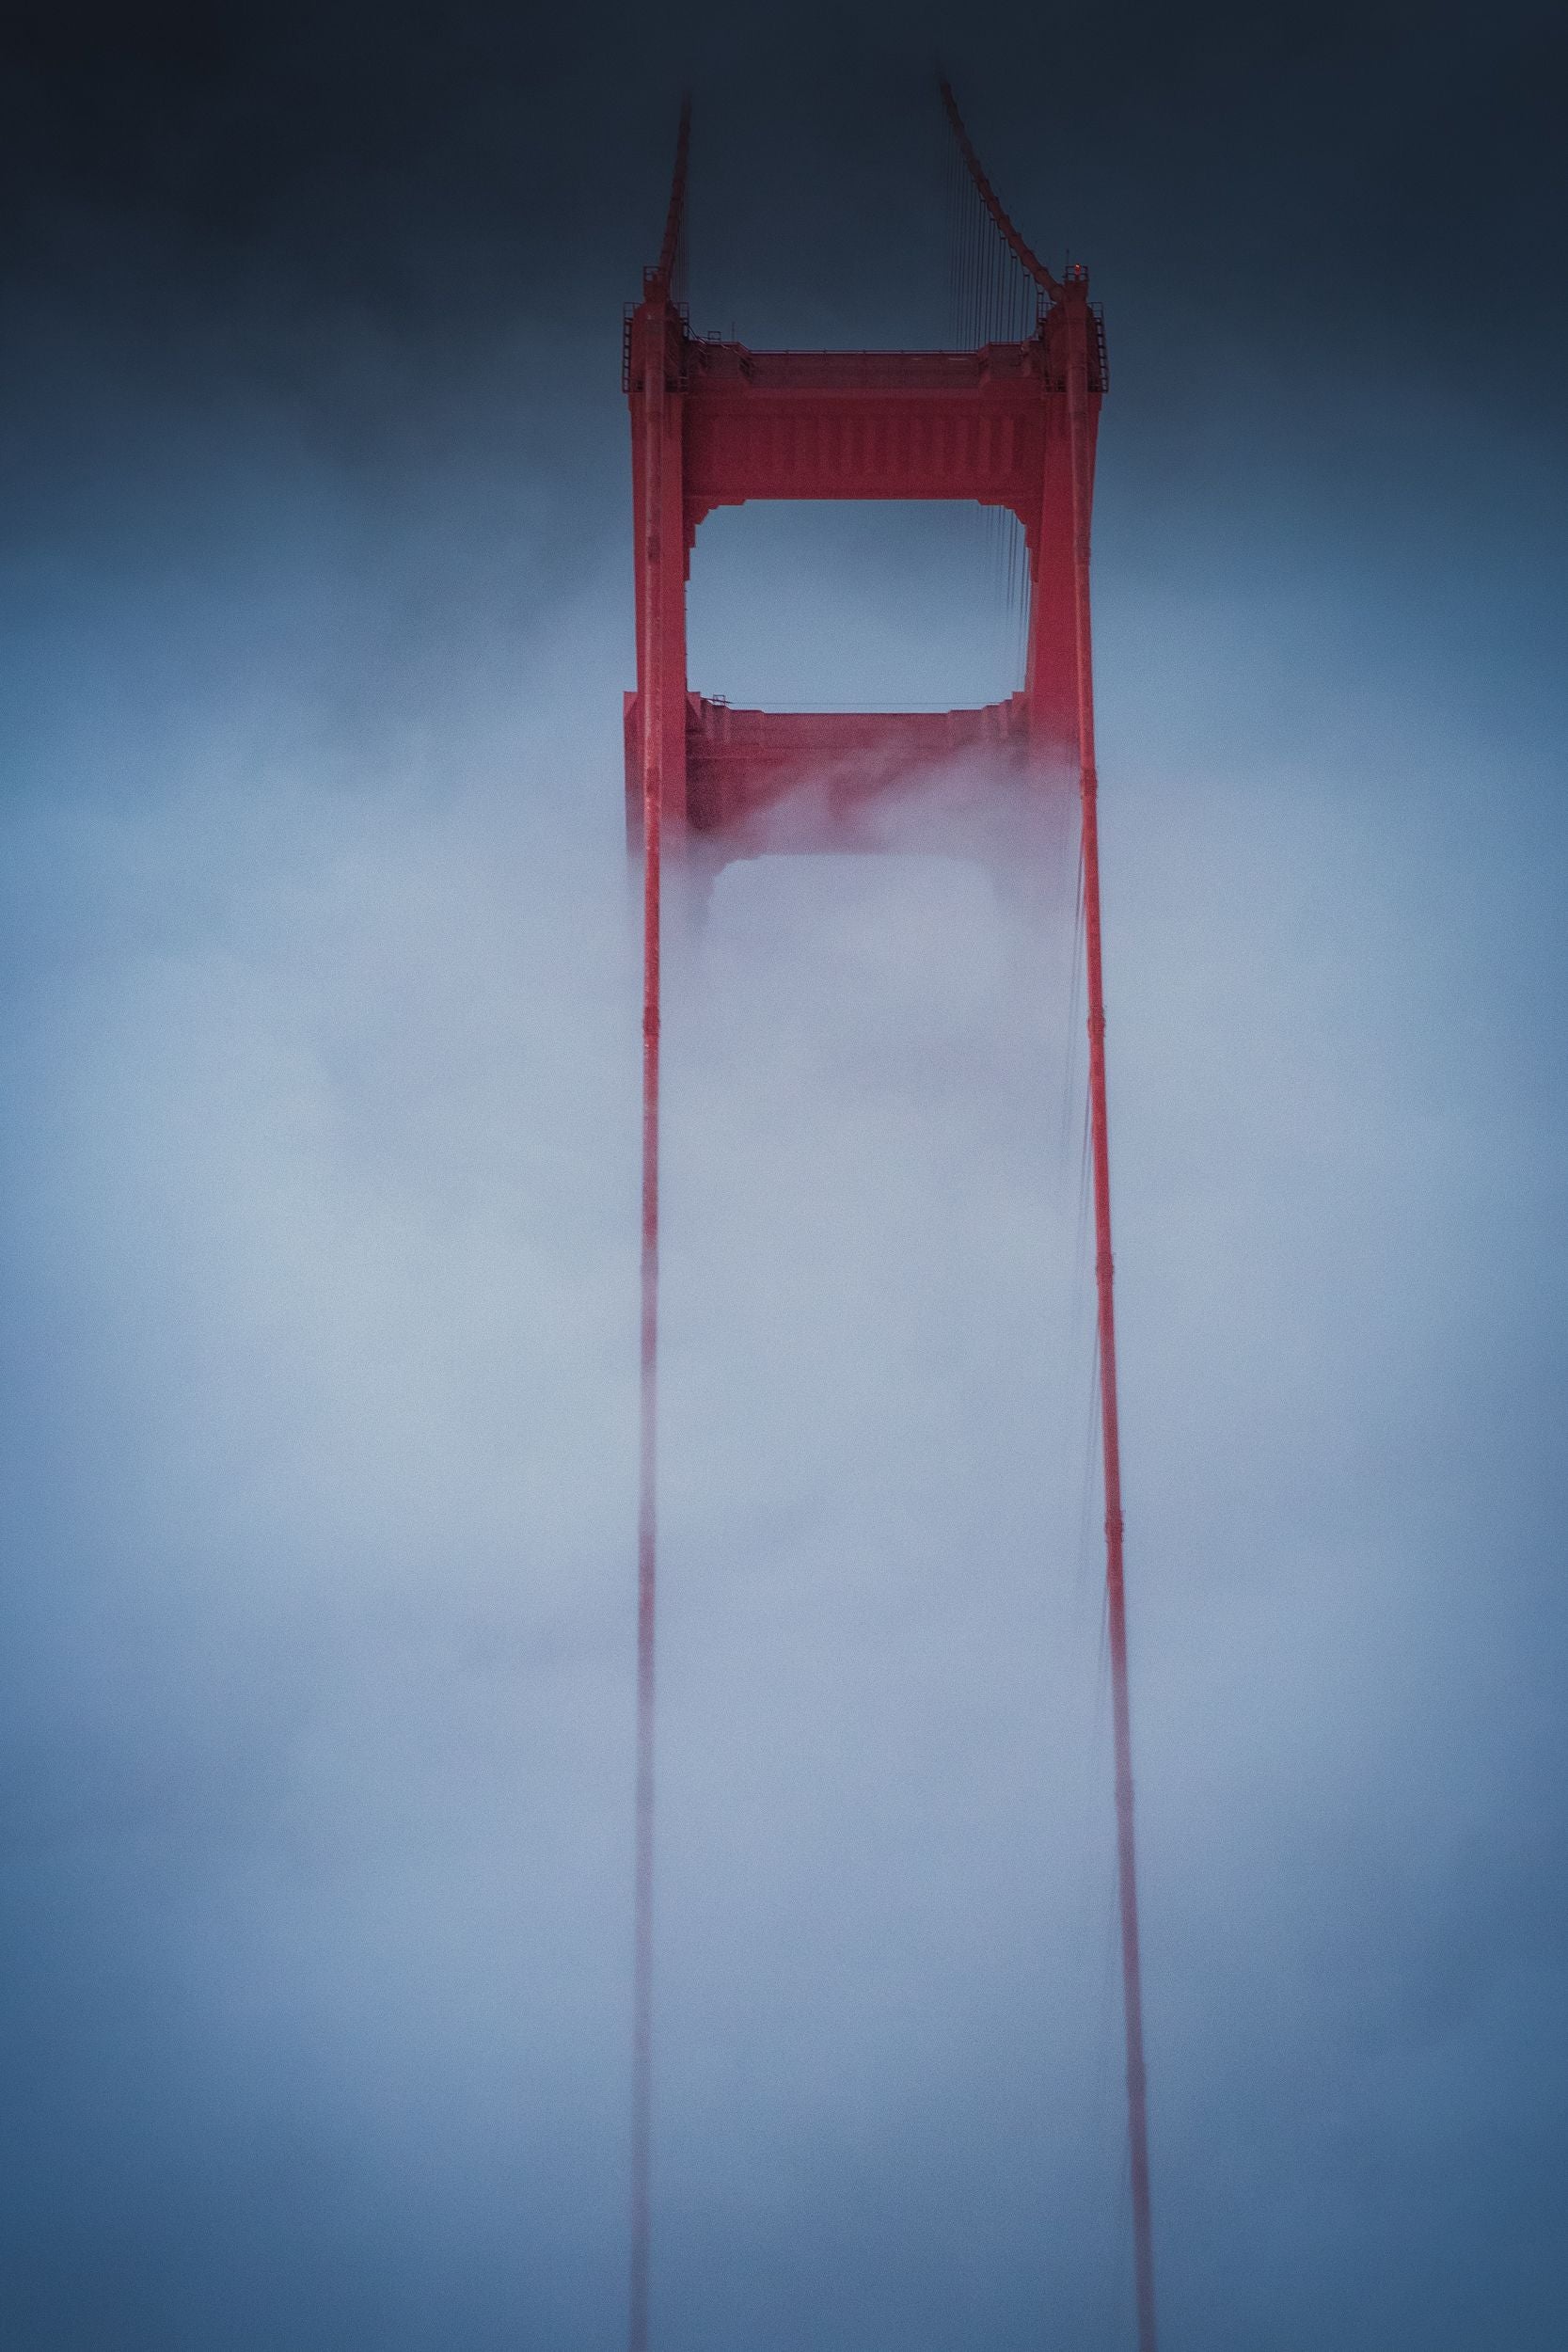 Fog drapes the Golden Gate Bridge.